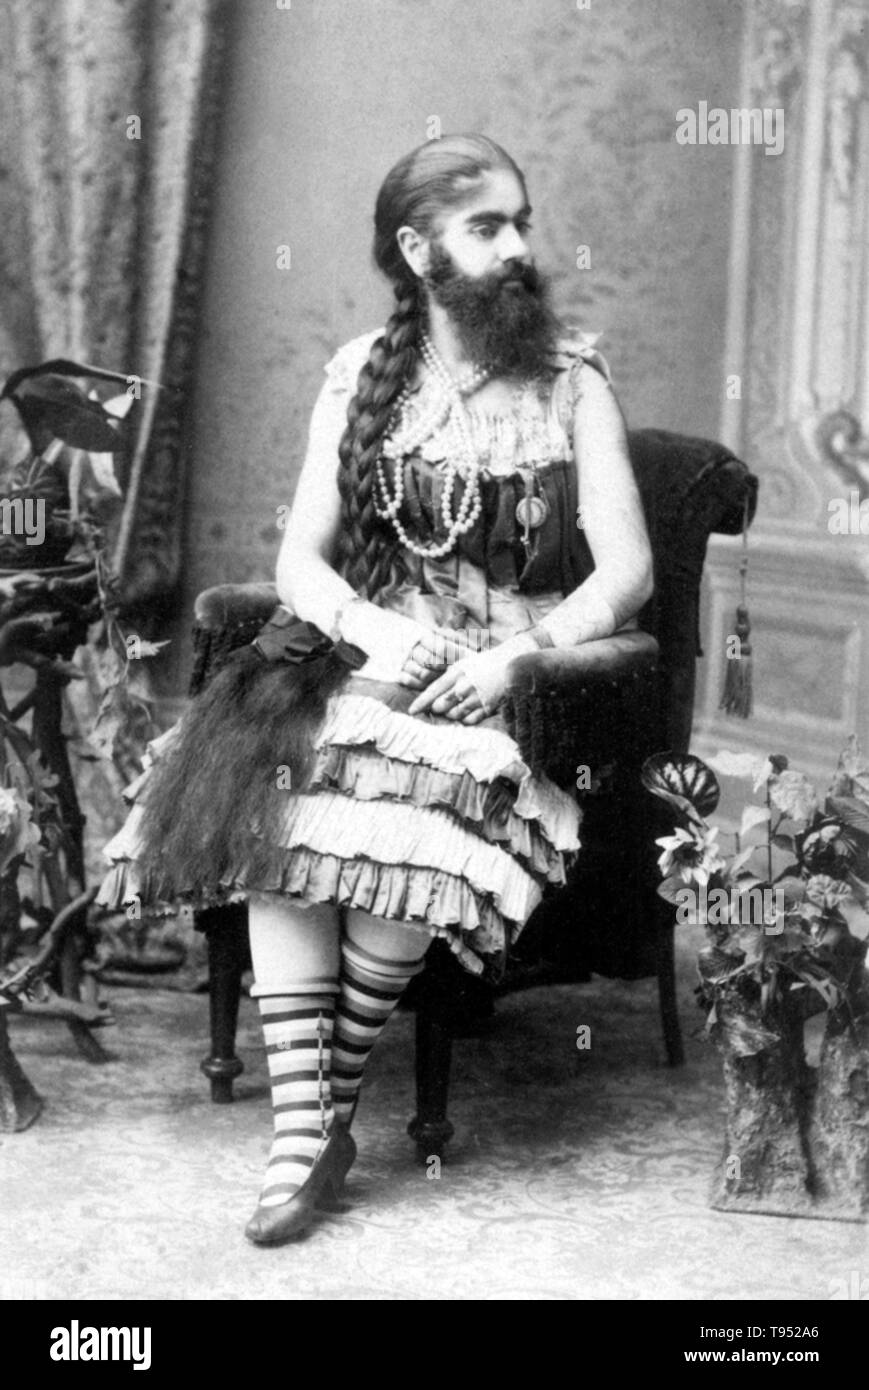 Annie Jones Elliot (Juillet 14, 1865 - Octobre 22, 1902) était une femme à barbe américain. Elle a fait une tournée avec showman P. T. Barnum comme une attraction de cirque. Si la cause de son état était l'hirsutisme ou d'une maladie génétique qui touche les enfants des deux sexes et se poursuit à l'âge adulte est inconnue. De nombreux photographes, y compris Mathew Brady, a pris ses portraits au cours de sa vie, qui ont été largement diffusés. Banque D'Images